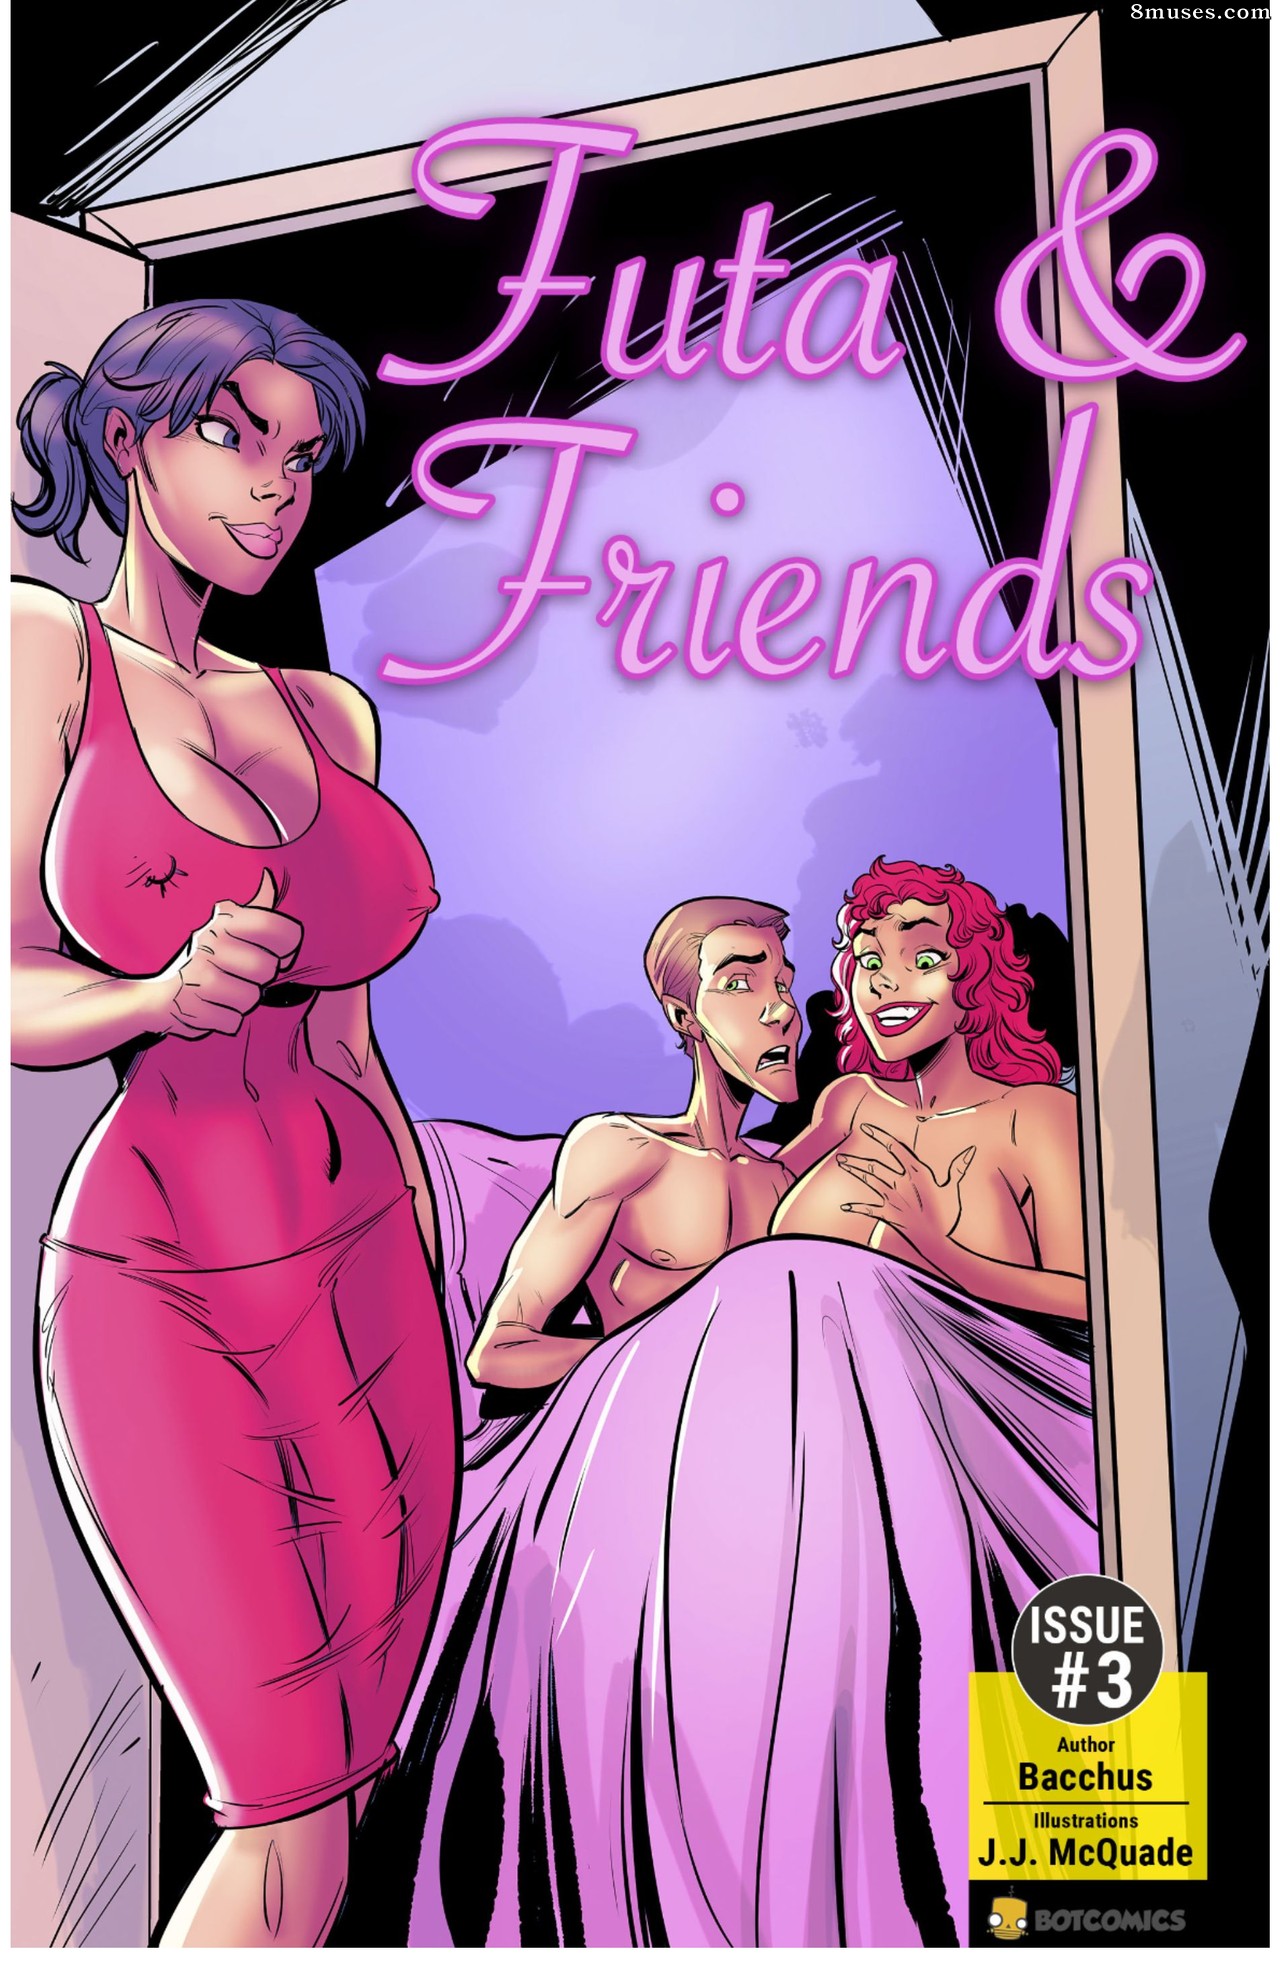 1280px x 1961px - Futa & Friends Issue 3 - 8muses Comics - Sex Comics and Porn Cartoons